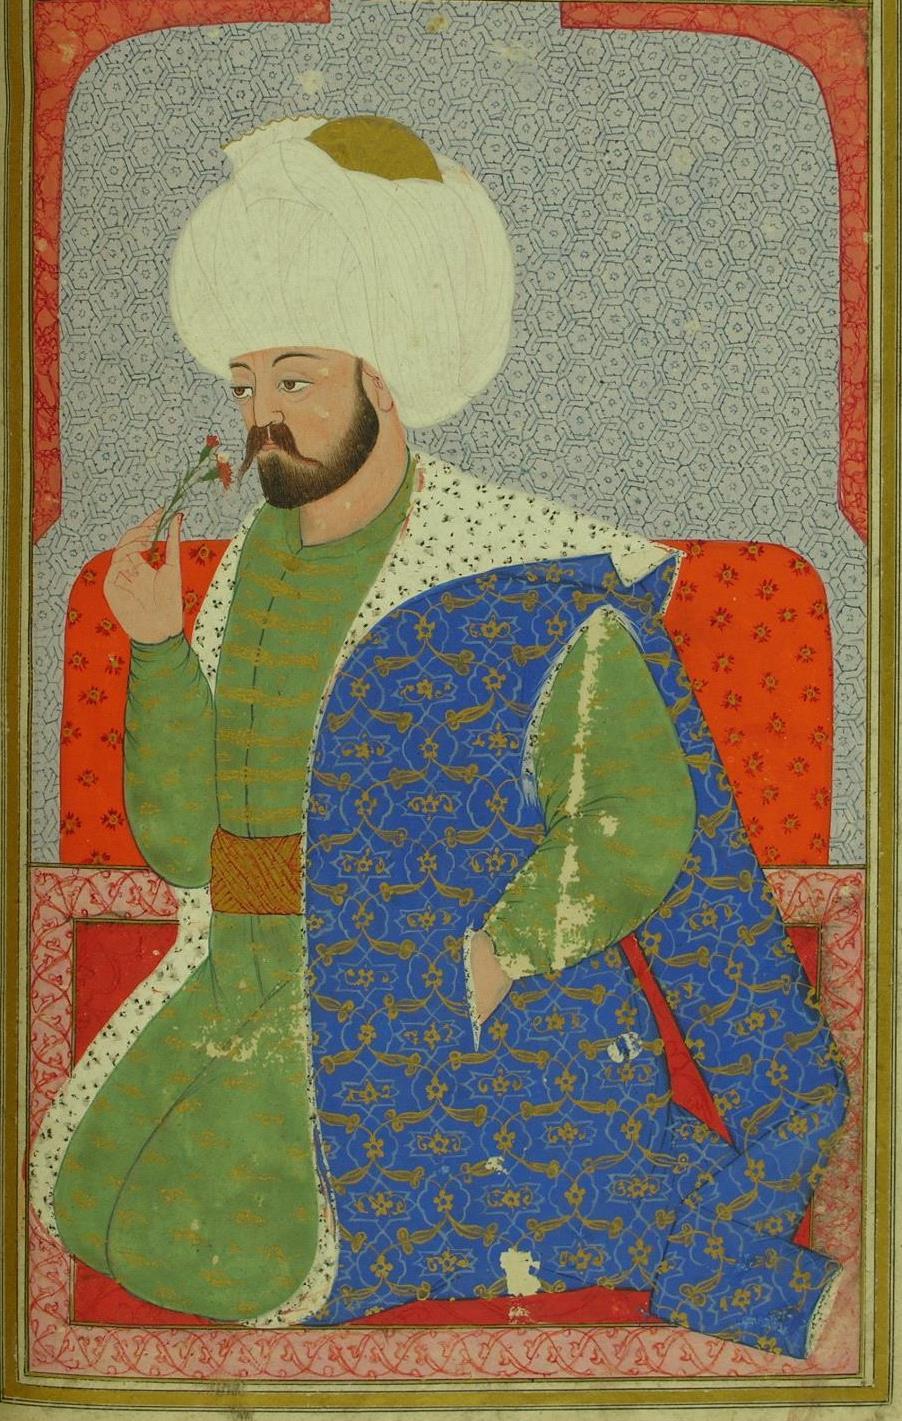 326 RESİM 6. Çelebi Mehmed, (Nakkaş Osman) 2.2. Nakkaş Osman Çelebi Mehmed, (Kıyâfetü l-insâniyye fî Şemâili l-osmâniyye) adlı Nakaş Osmanın eseri süsleme açısından değerlendirilmiştir.